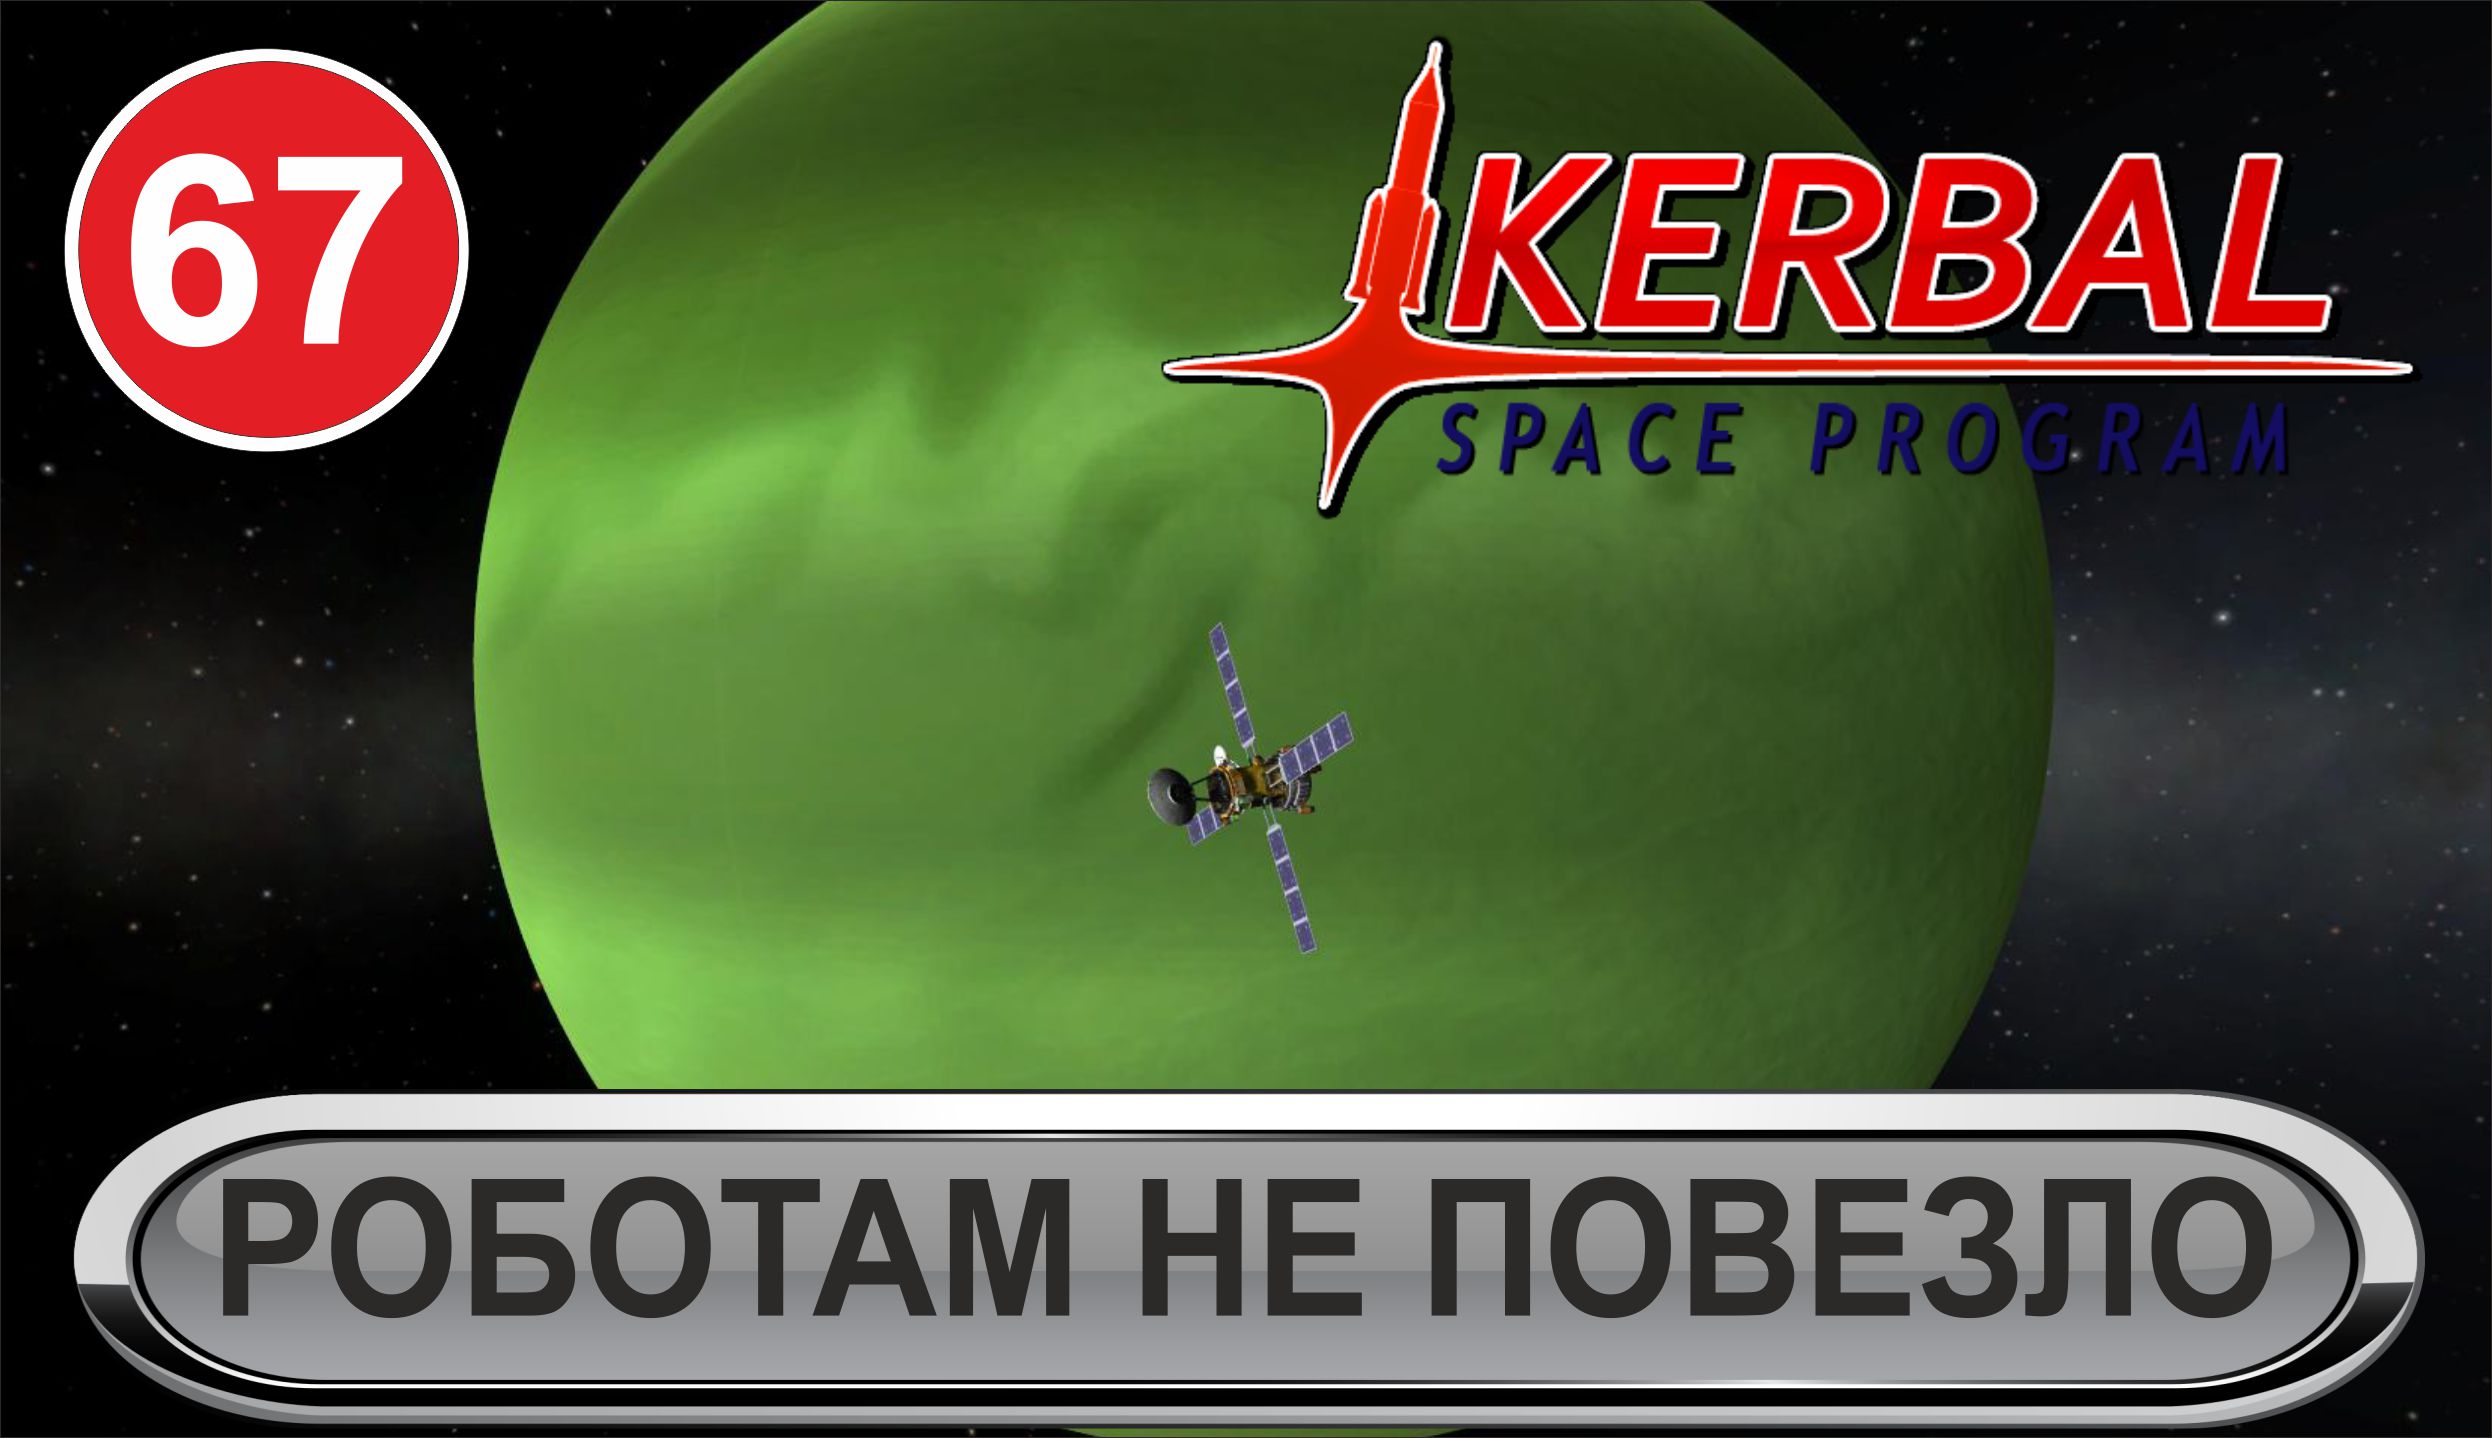 Kerbal Space Program - Роботам не повезло